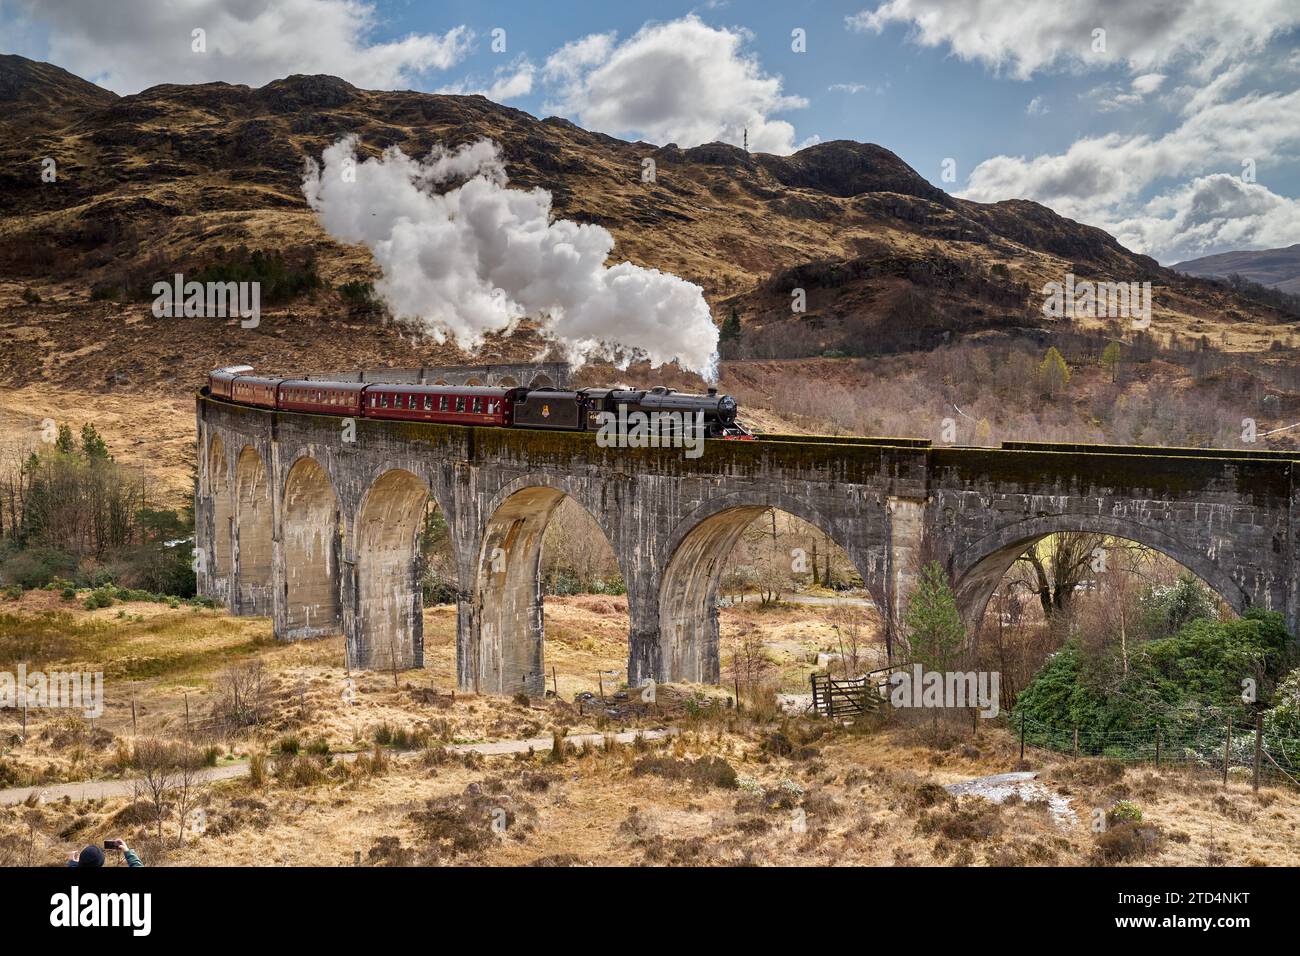 Le train à vapeur jacobite qui traverse le viaduc de Glenfinnan, Highlands, Écosse. Rendu célèbre par les films Harry Potter. Banque D'Images